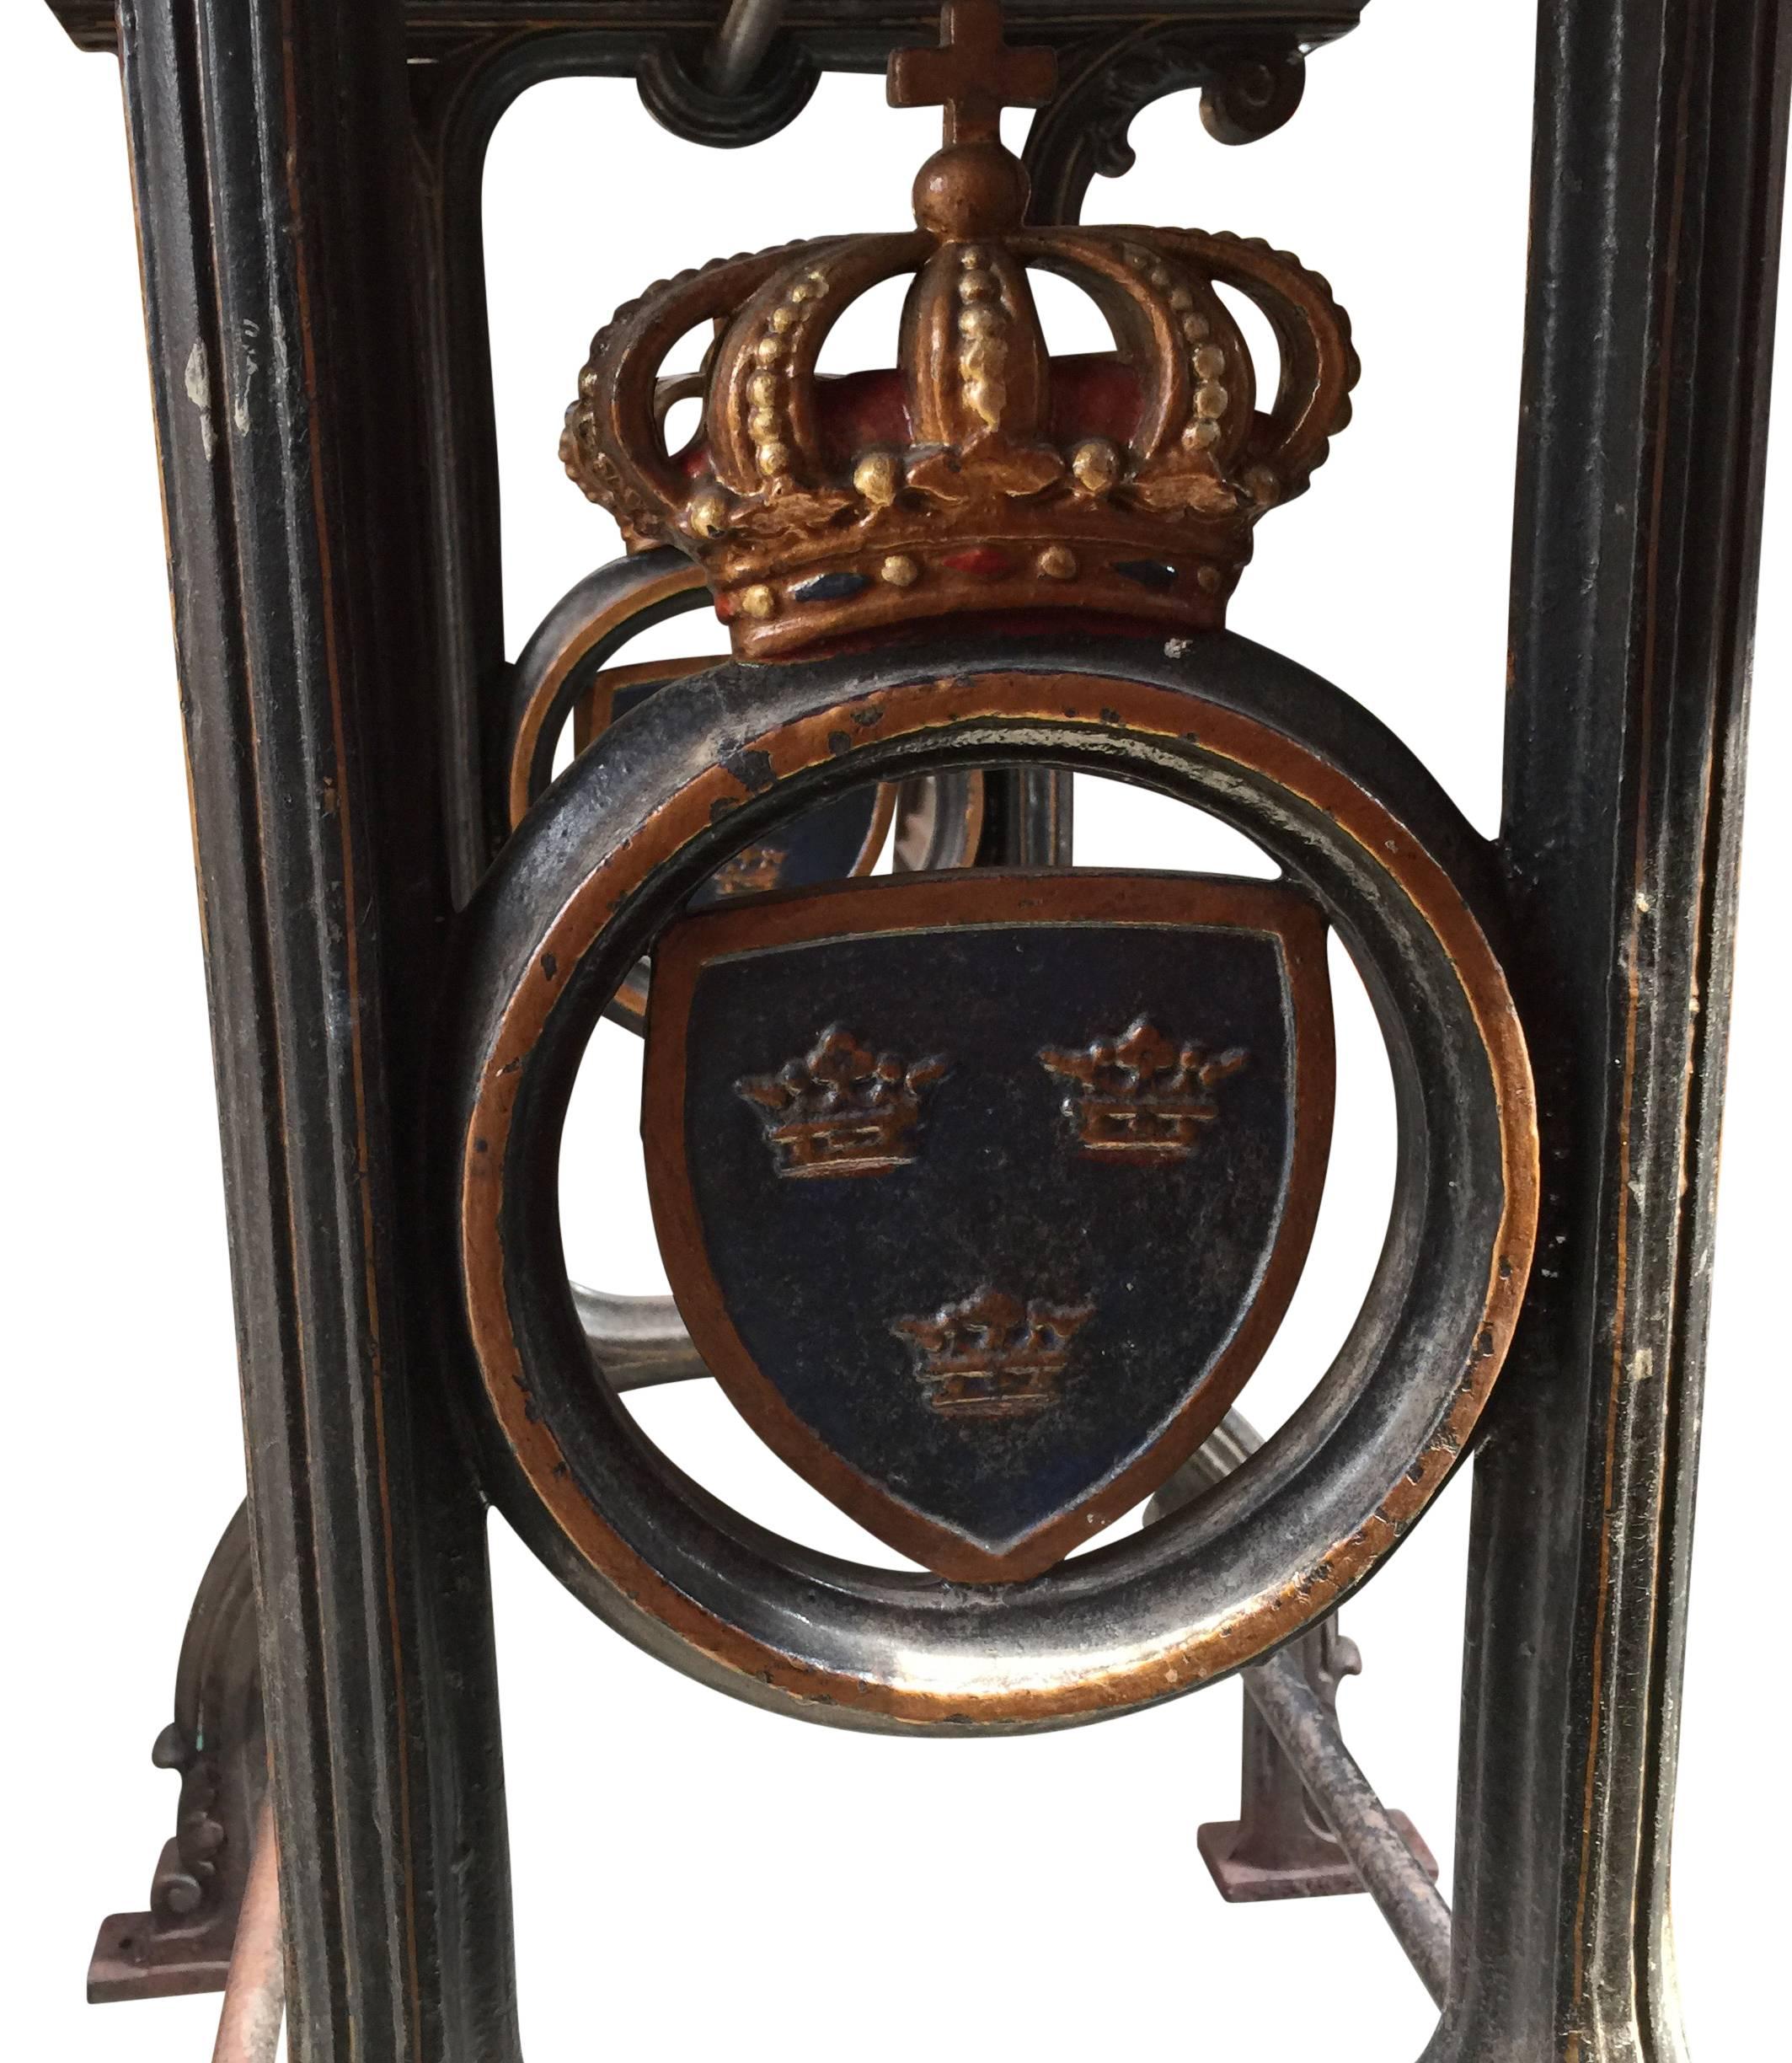 Charmante table en fonte de fer, avec un emblème couronné de trois couronnes royales suédoises sur fond bleu de chaque côté.